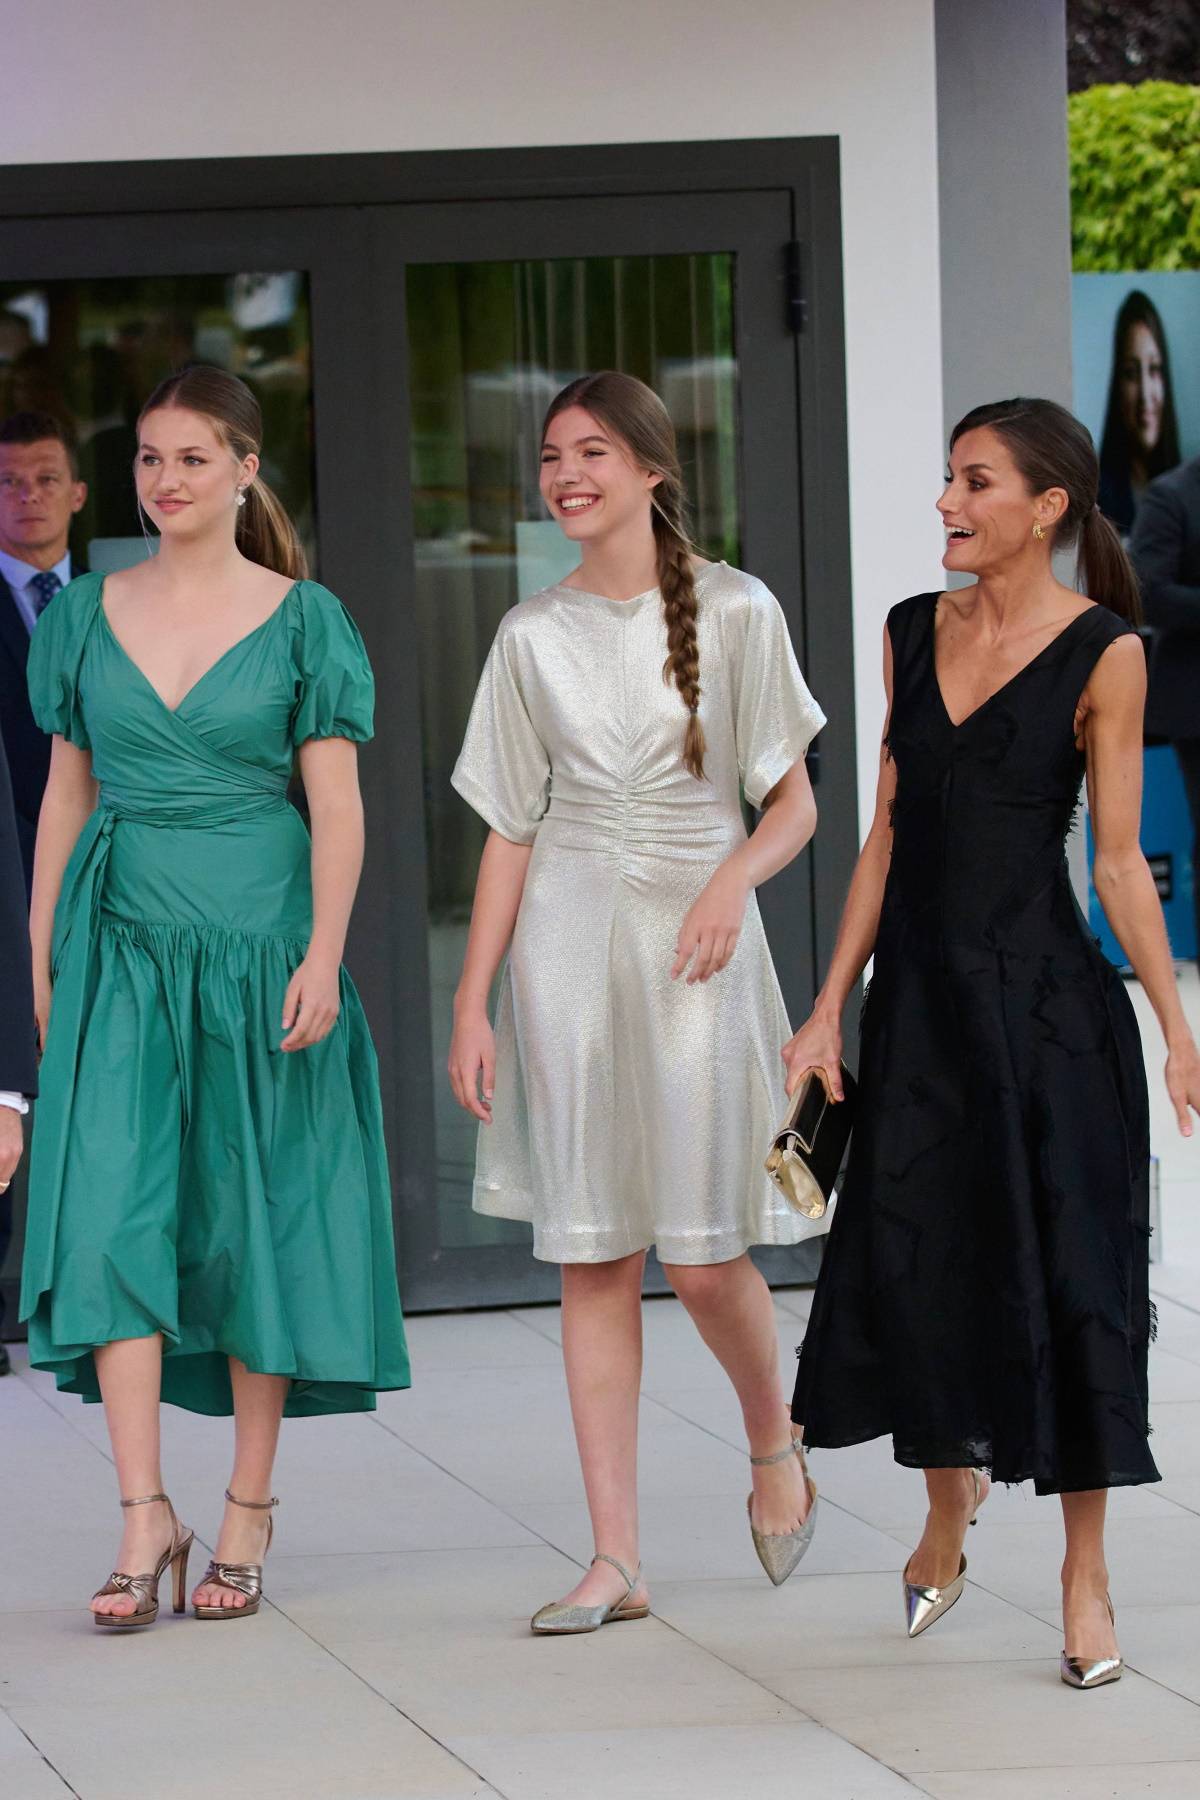 Królowa Letycja z córkami w Gironie w sukienkach popularnych marek. Królowa Letycja na oficjalne wydarzenie w Gironie założyła czarną suknię H&M, a jej córki wybrały sukienki hiszpańskich marek.